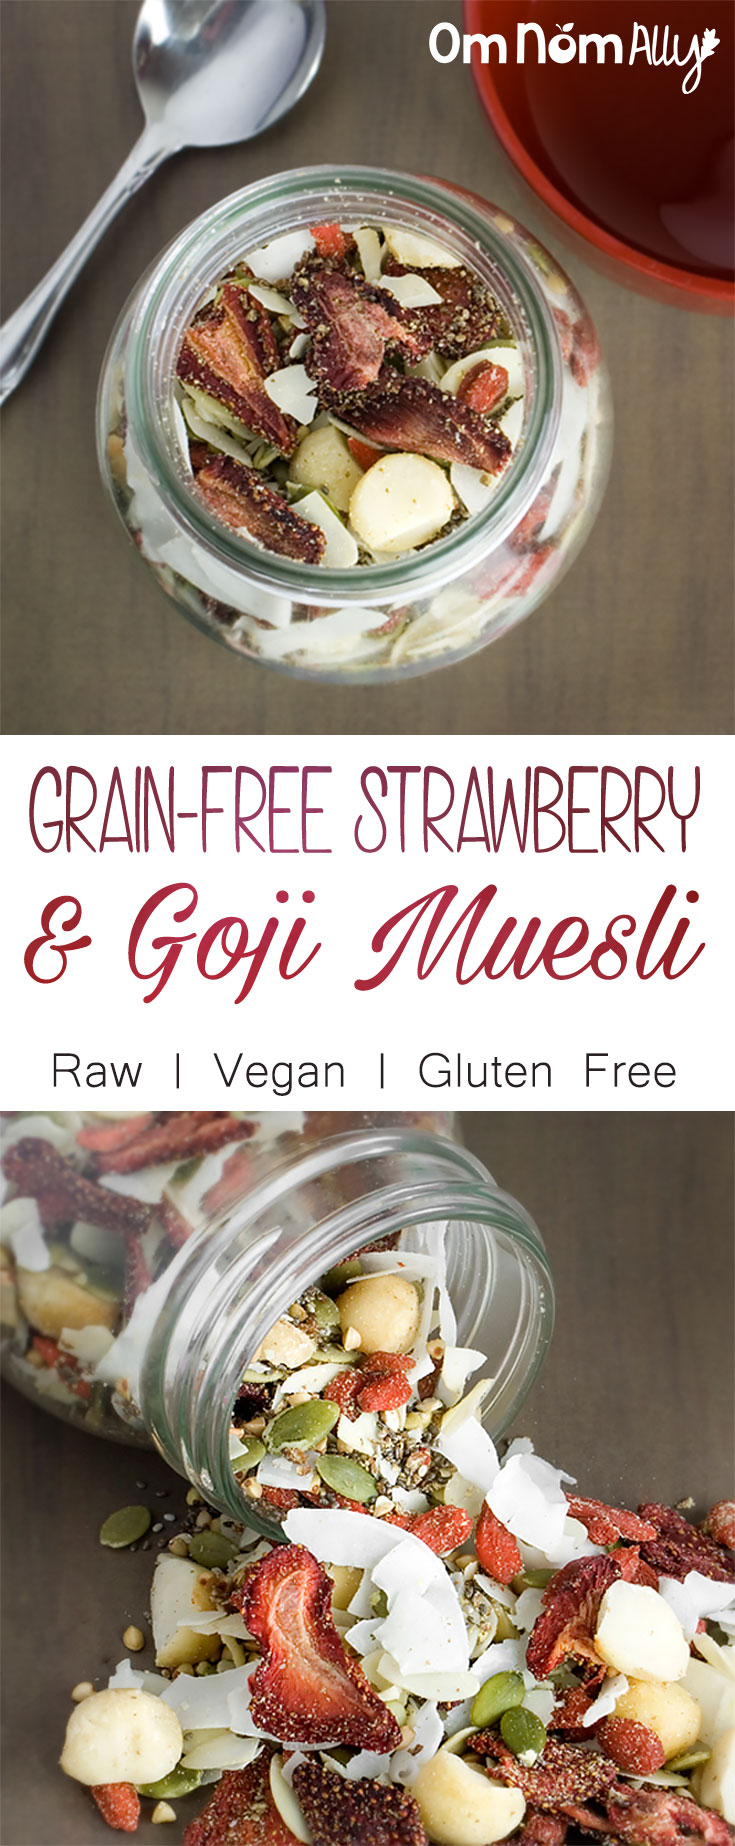 Grain-Free Strawberry & Goji Muesli - Raw, Vegan and Gluten Free